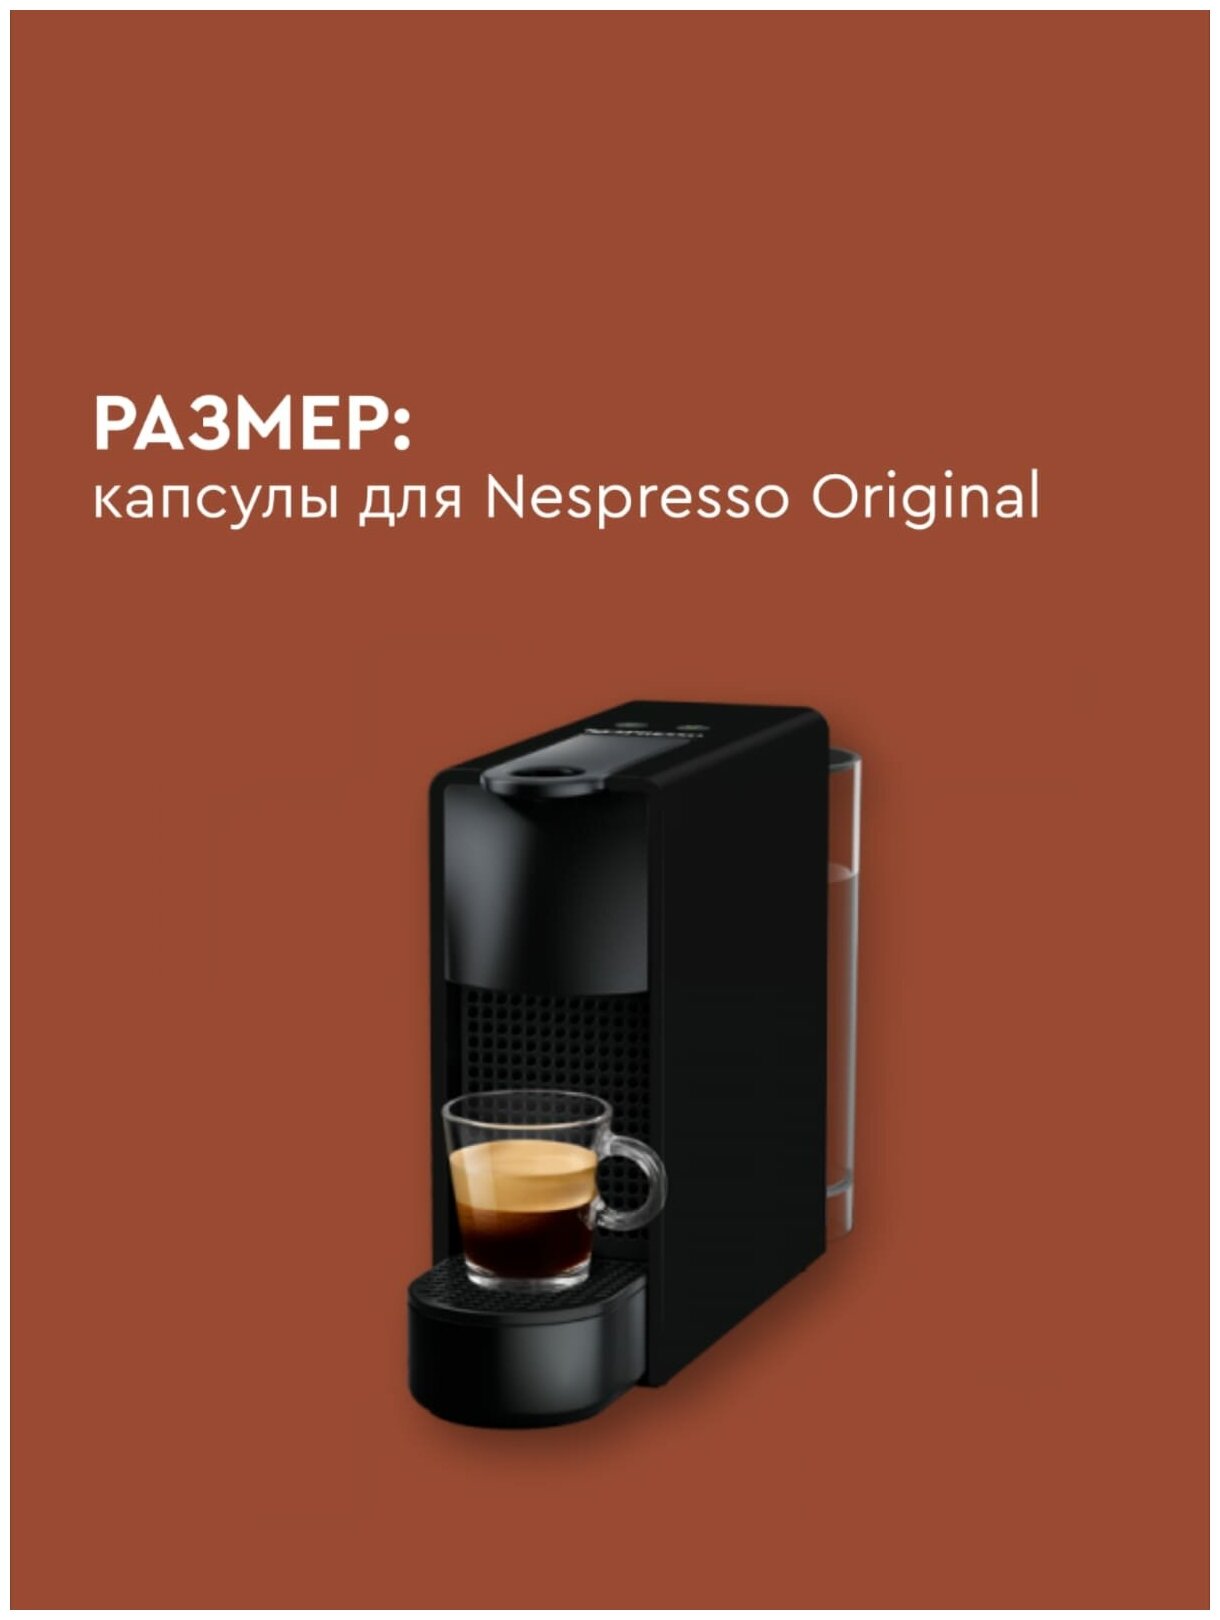 Кофе в капсулах, Nespresso, FILTER STYLE INTENSE , 150ml, натуральный, молотый кофе в капсулах, для капсульных кофемашин, оригинал, неспрессо , 10шт - фотография № 3